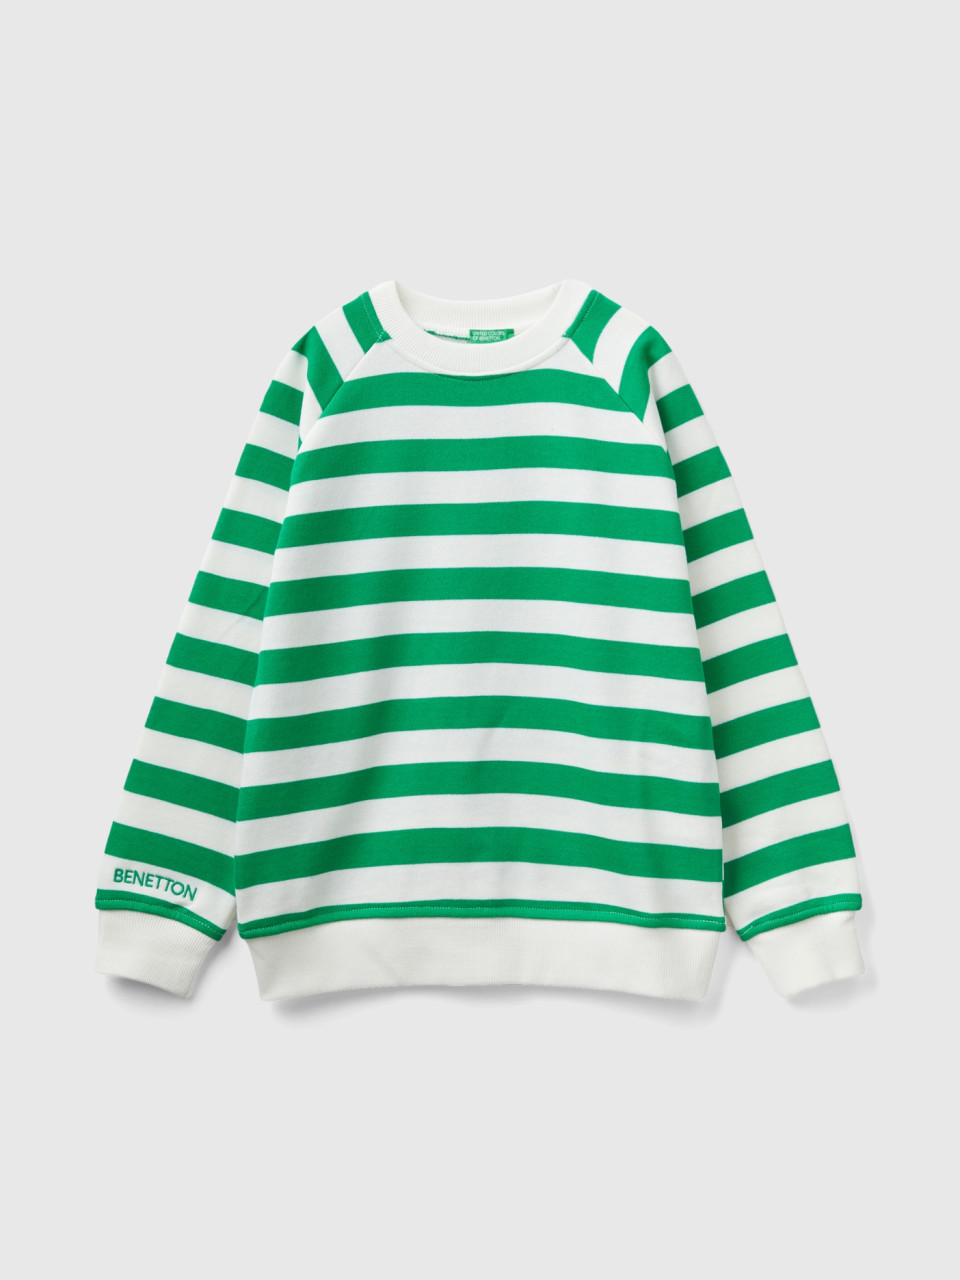 Benetton, Sweatshirt Mit Streifen In Grün Und Weiß, Bunt, male